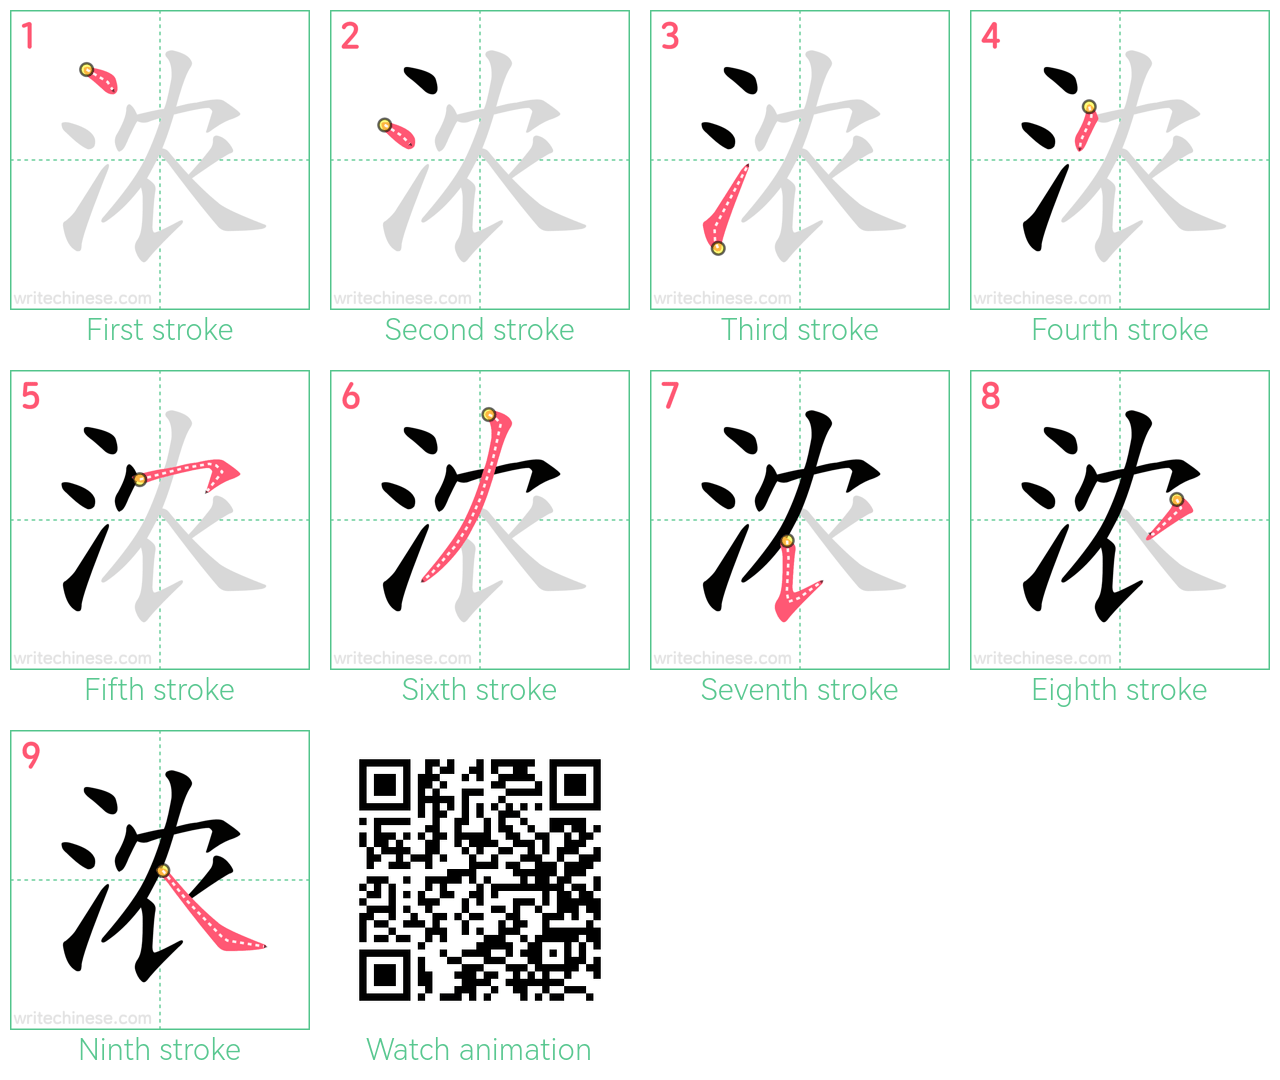 浓 step-by-step stroke order diagrams